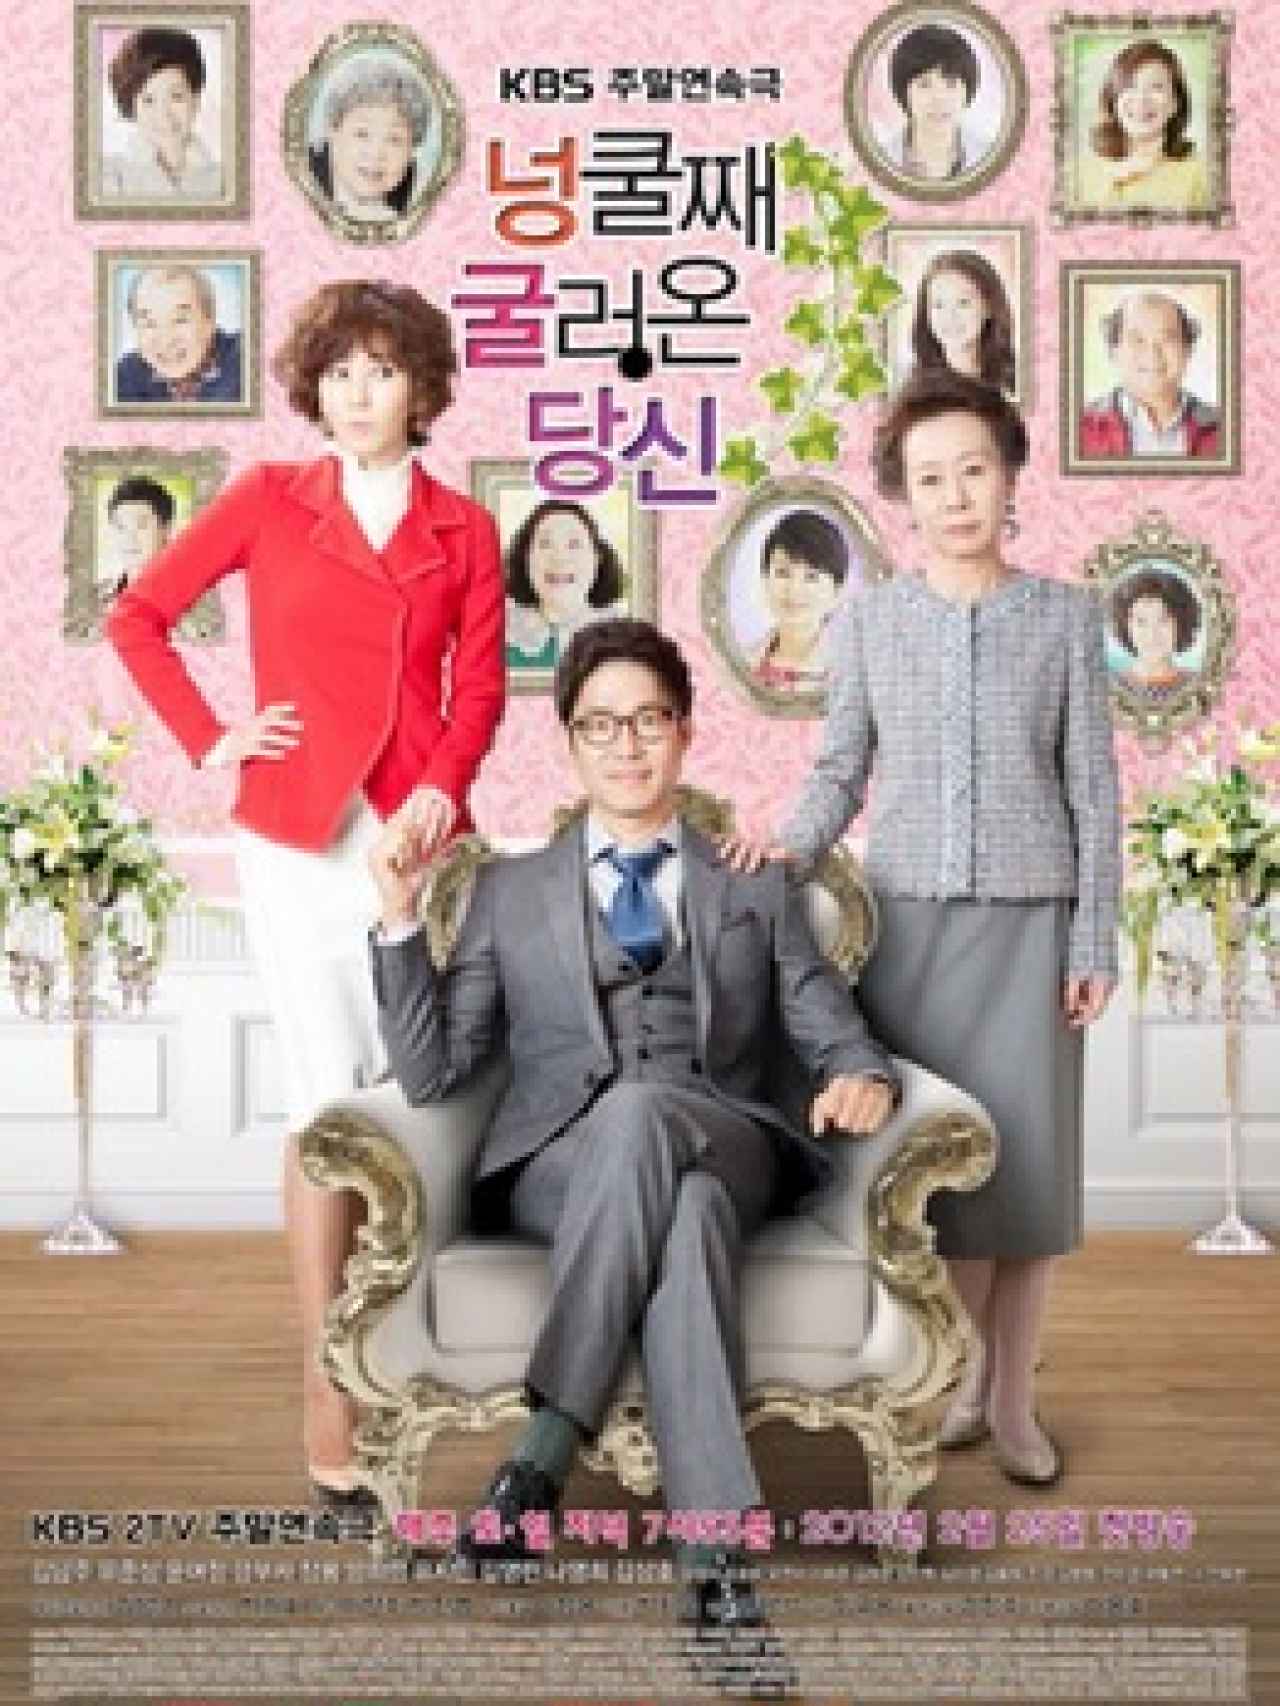 Una de las populares telenovelas surcoreanas.